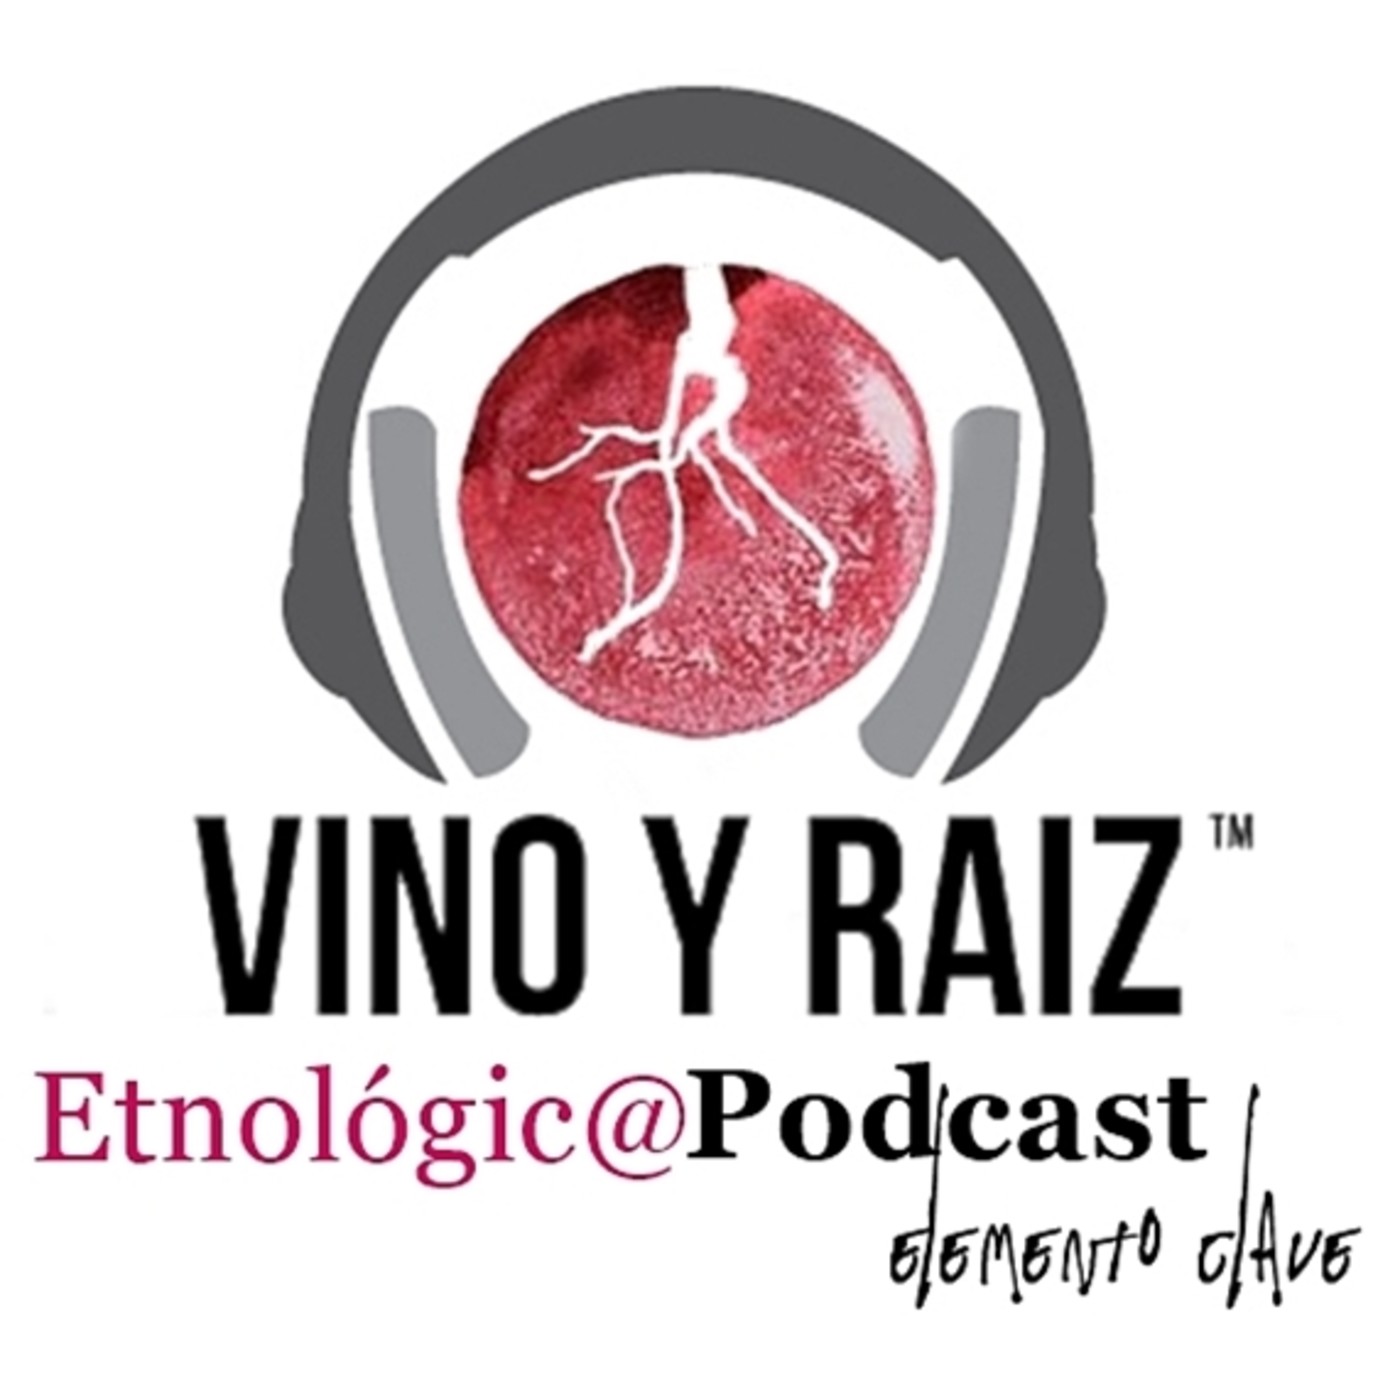 Vino y Raíz - Andrés Ortiz Tafur. Vinos, Textos Atemporales y Tipos Duros